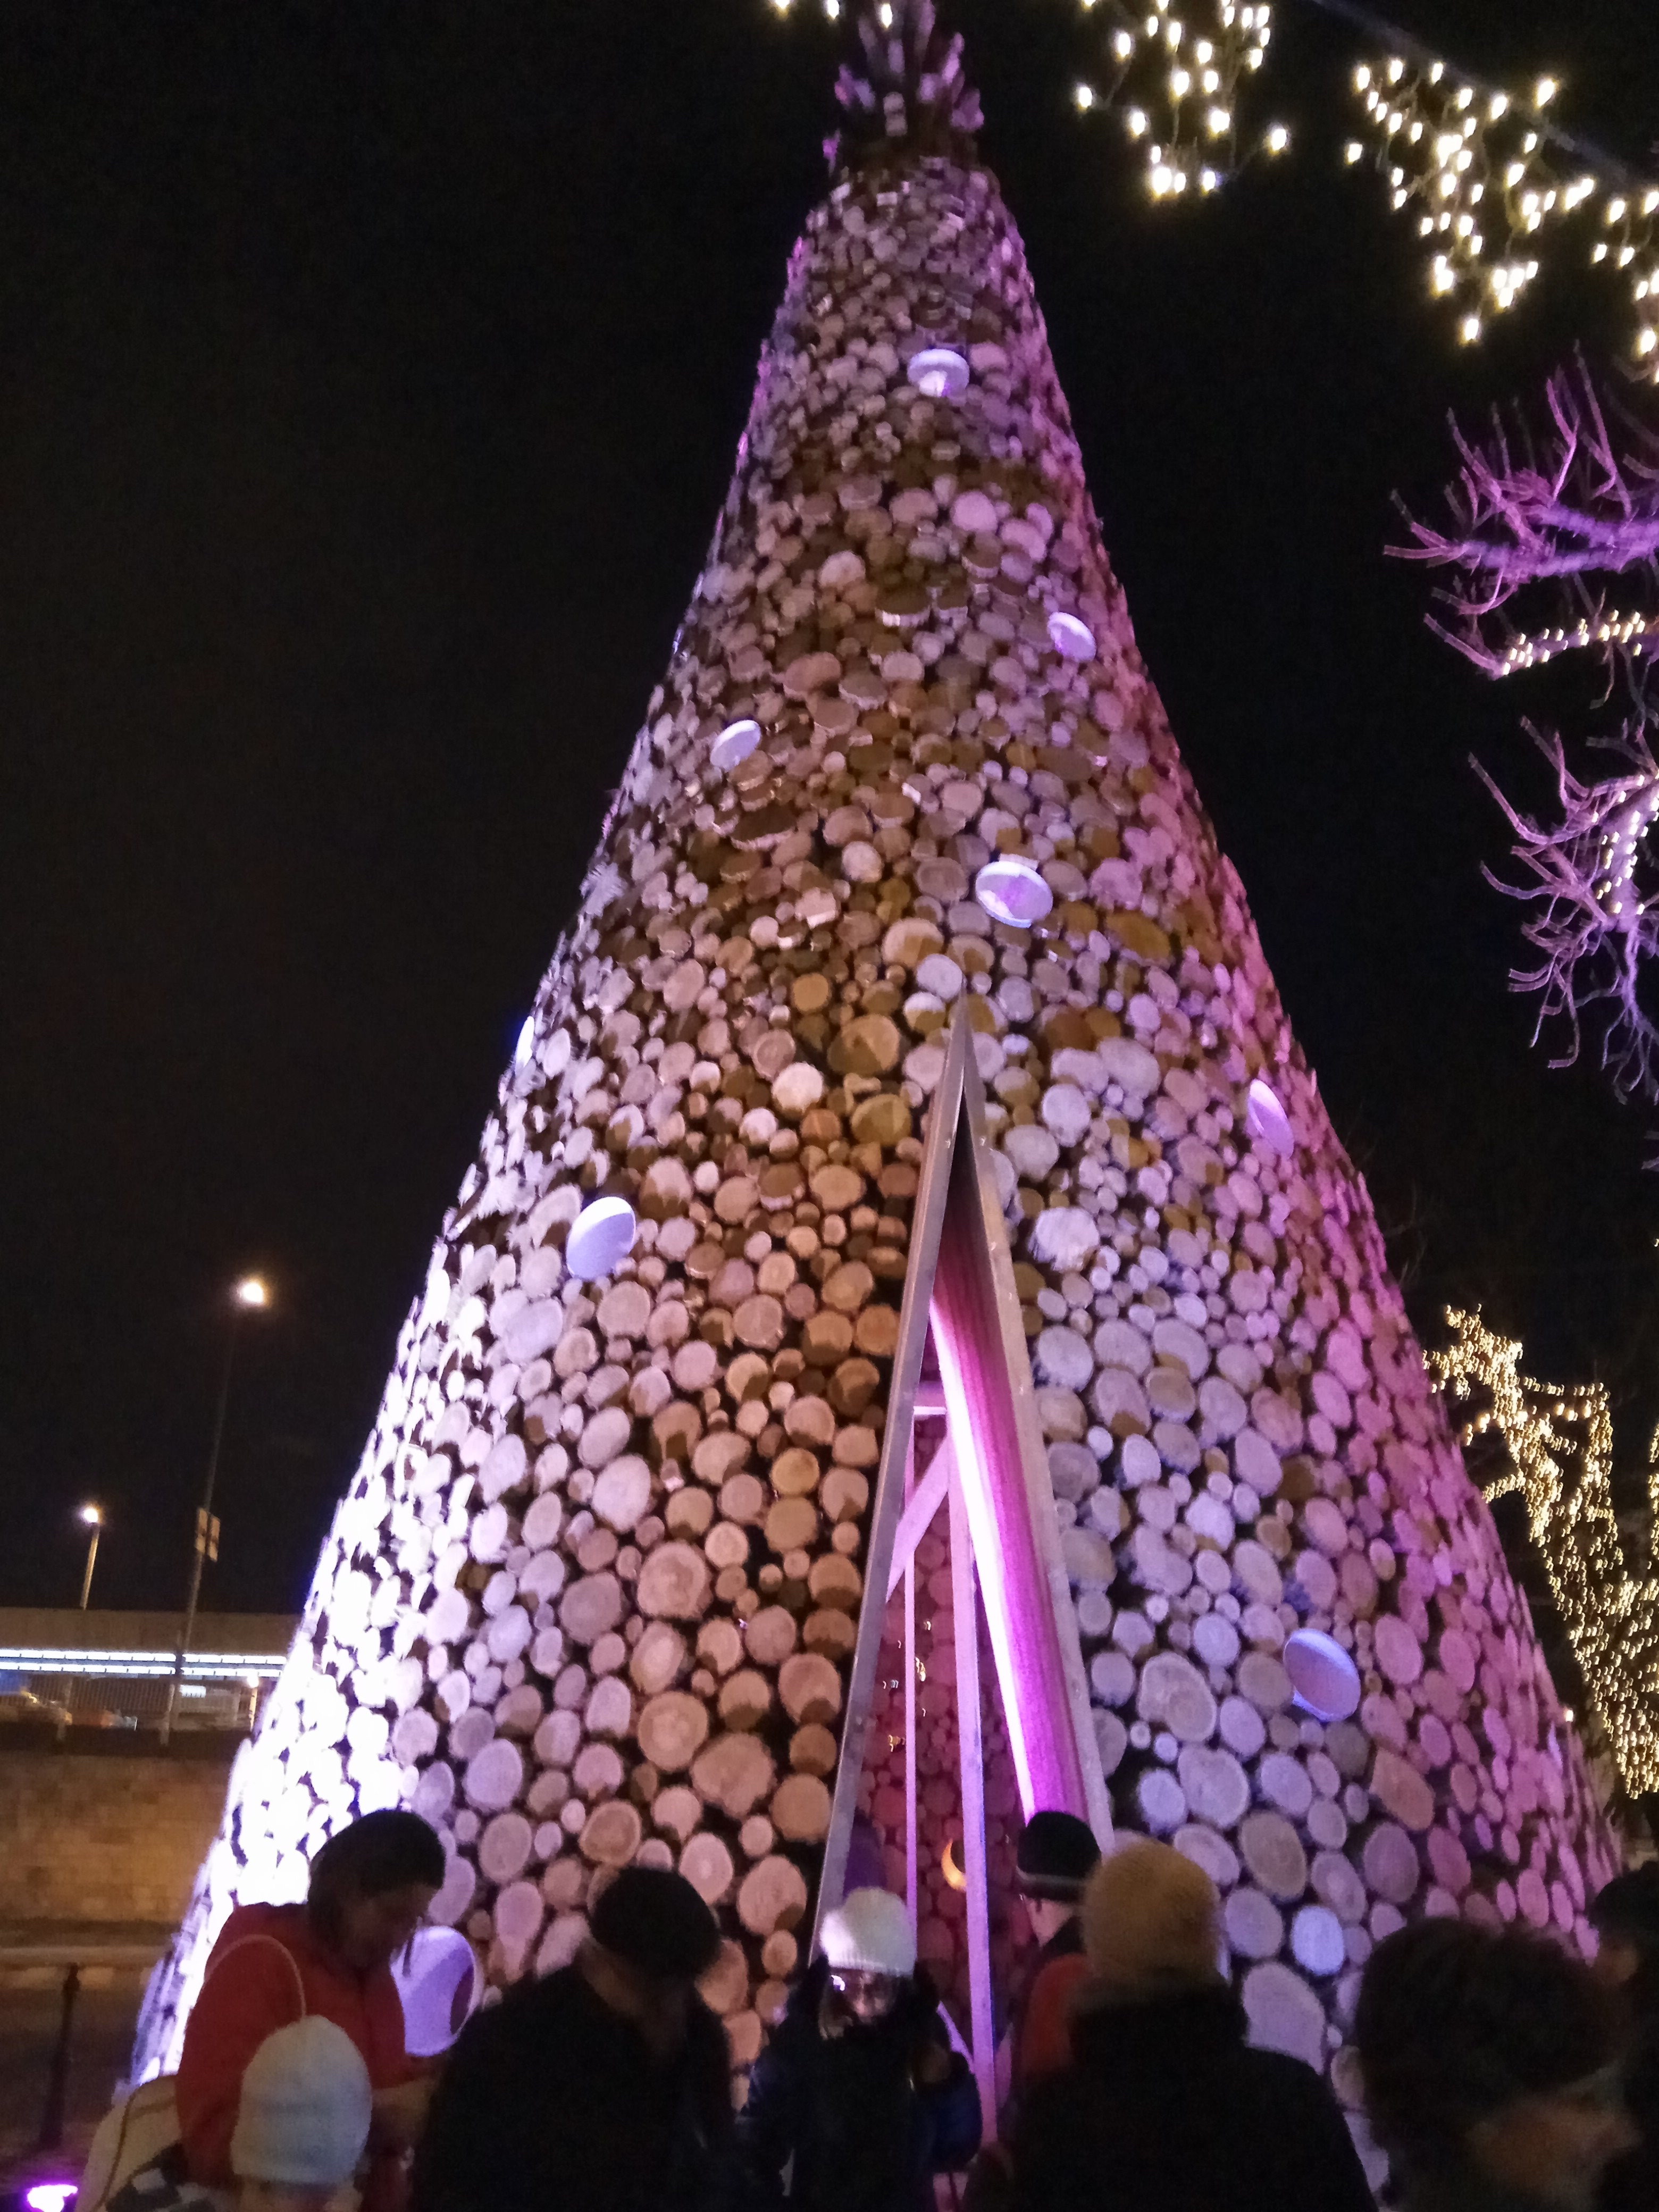 Tűzifából készült karácsonyfa, az ünnep végén rászorulóknak ajándékozzák, a szándék dicséretes, sok ezerre lenne szükség.